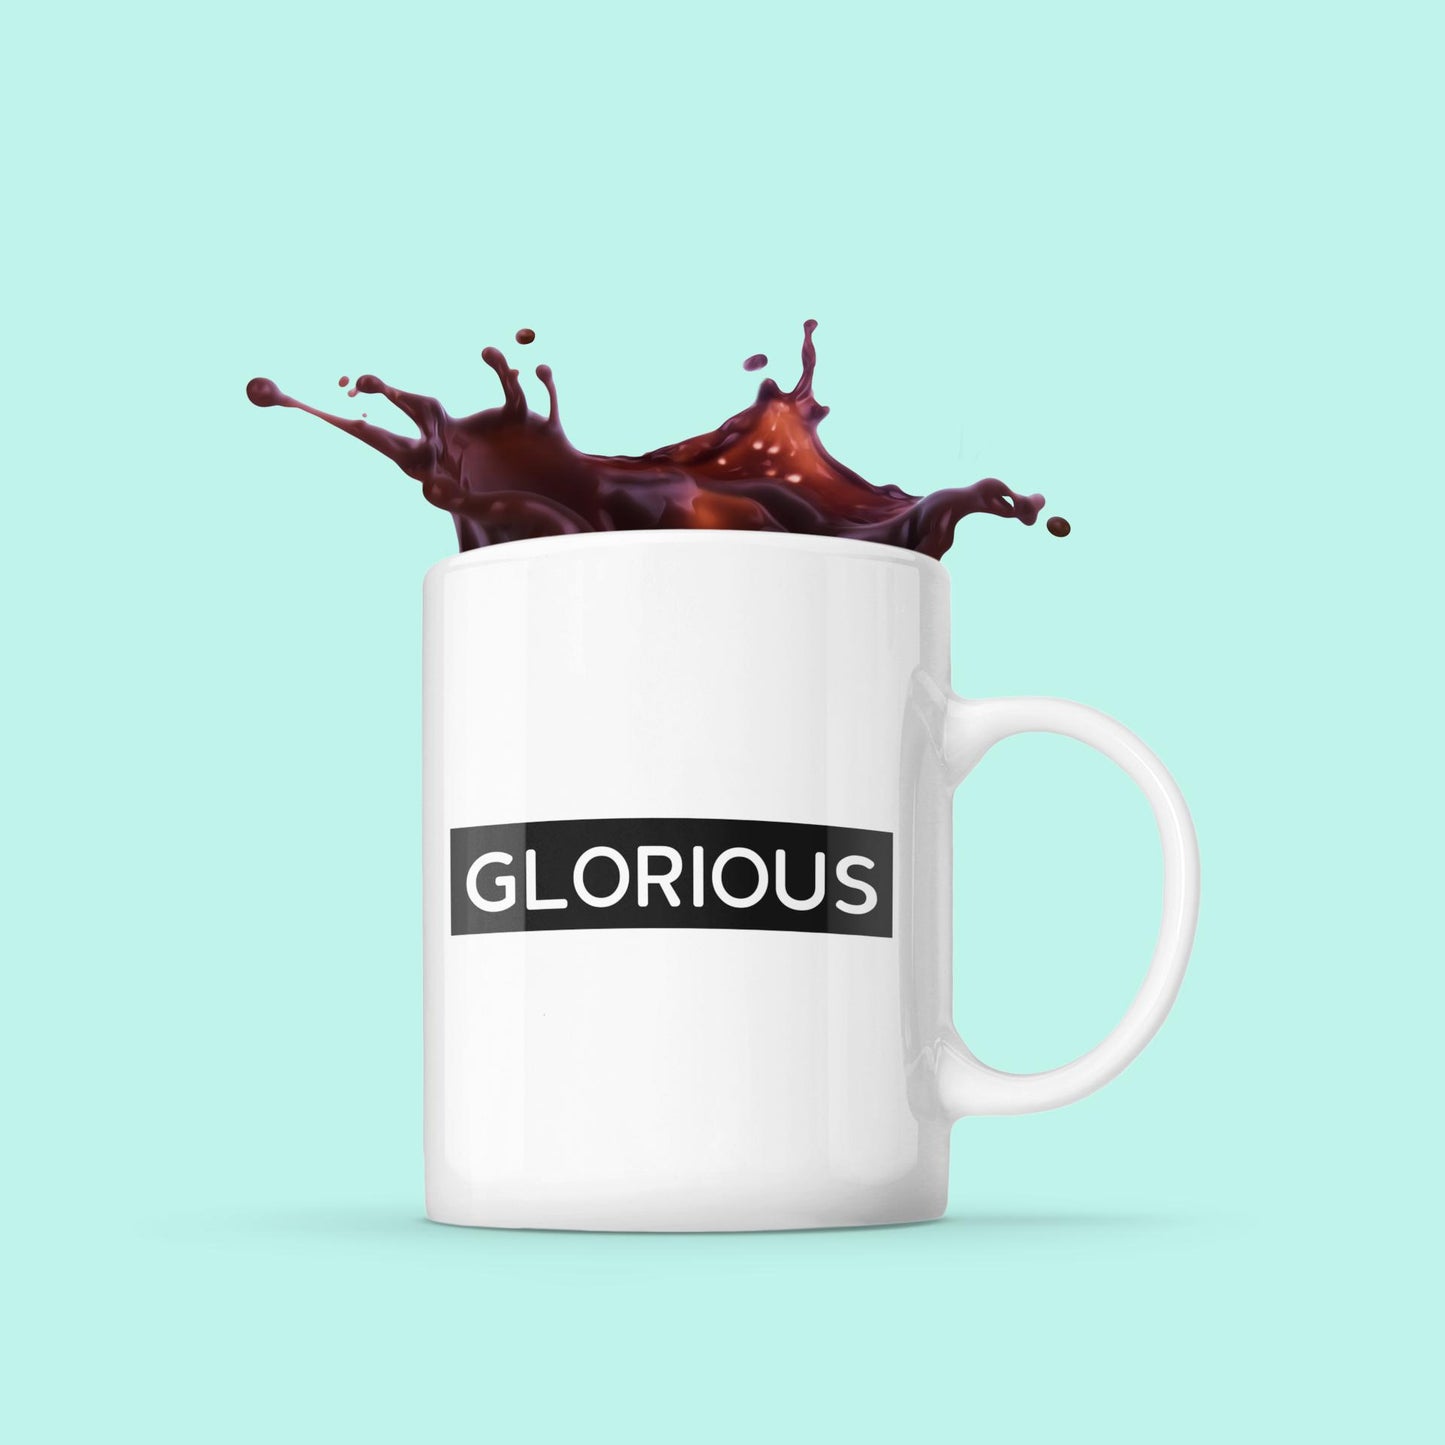 Glorious - Coffee